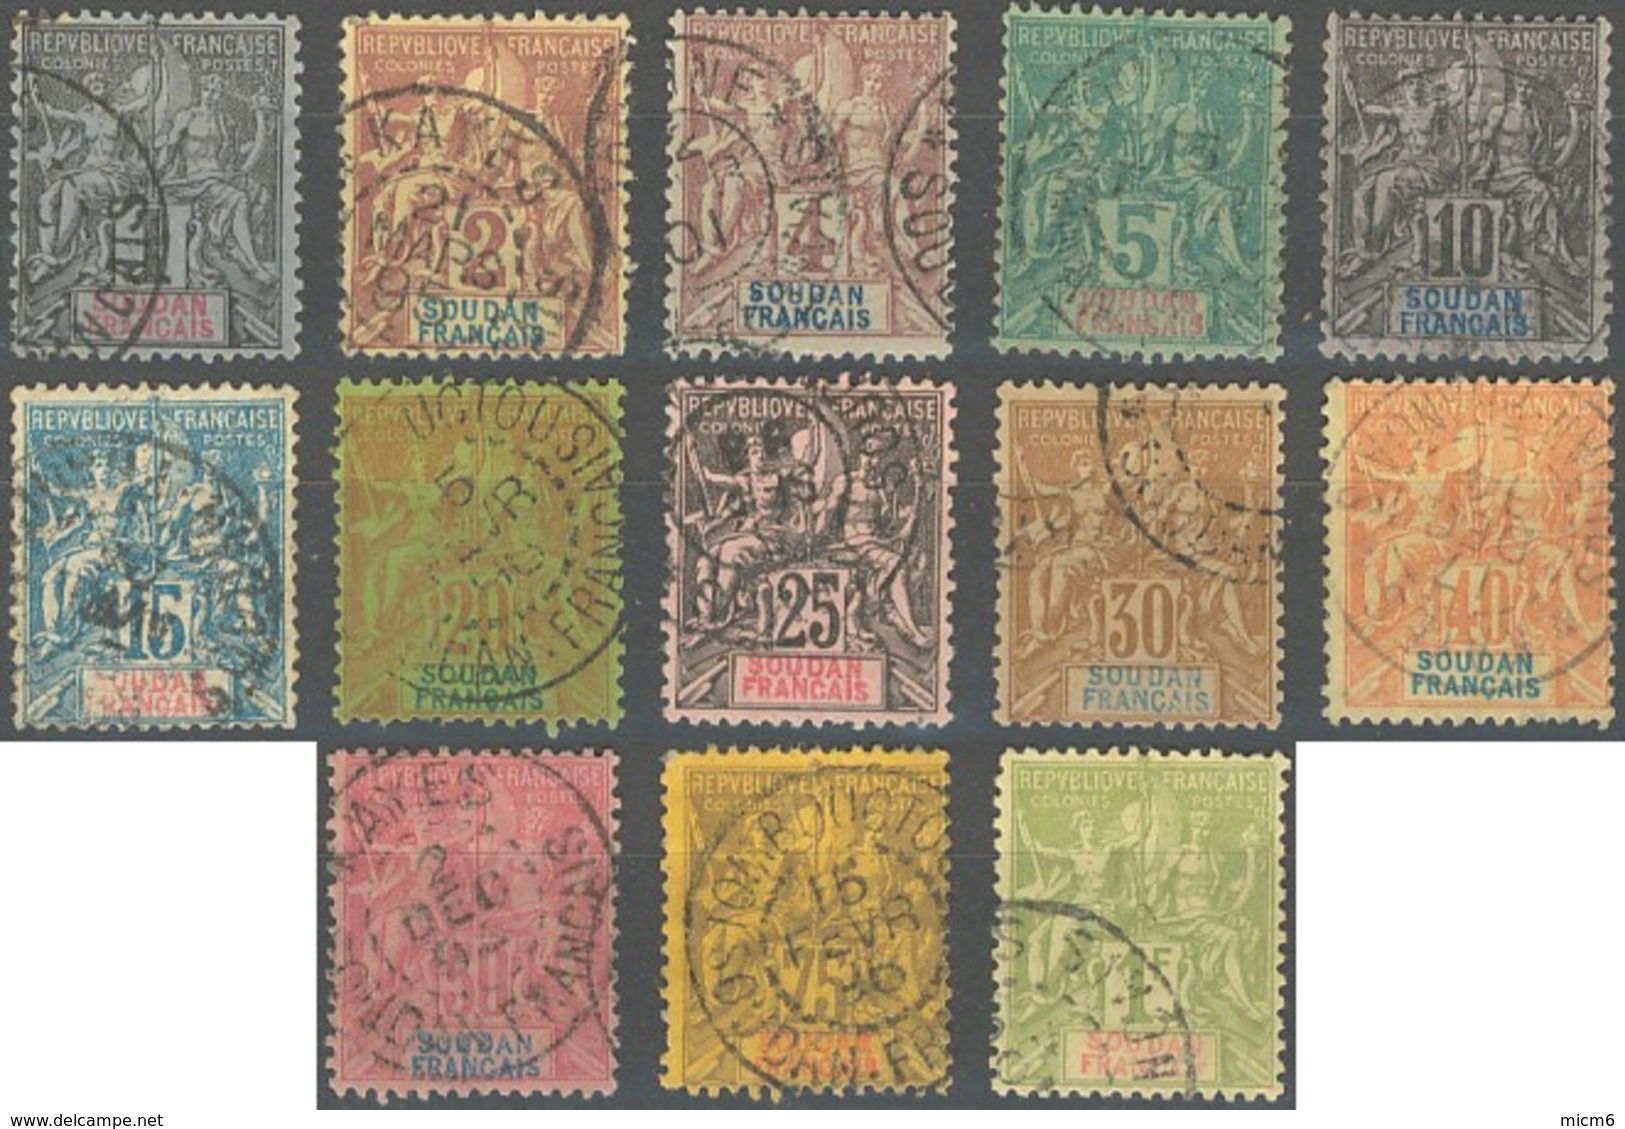 Soudan Français 1894-1900 - N° 03 à 15 (YT) N° 3 à 15 (AM) Oblitérés. - Usati